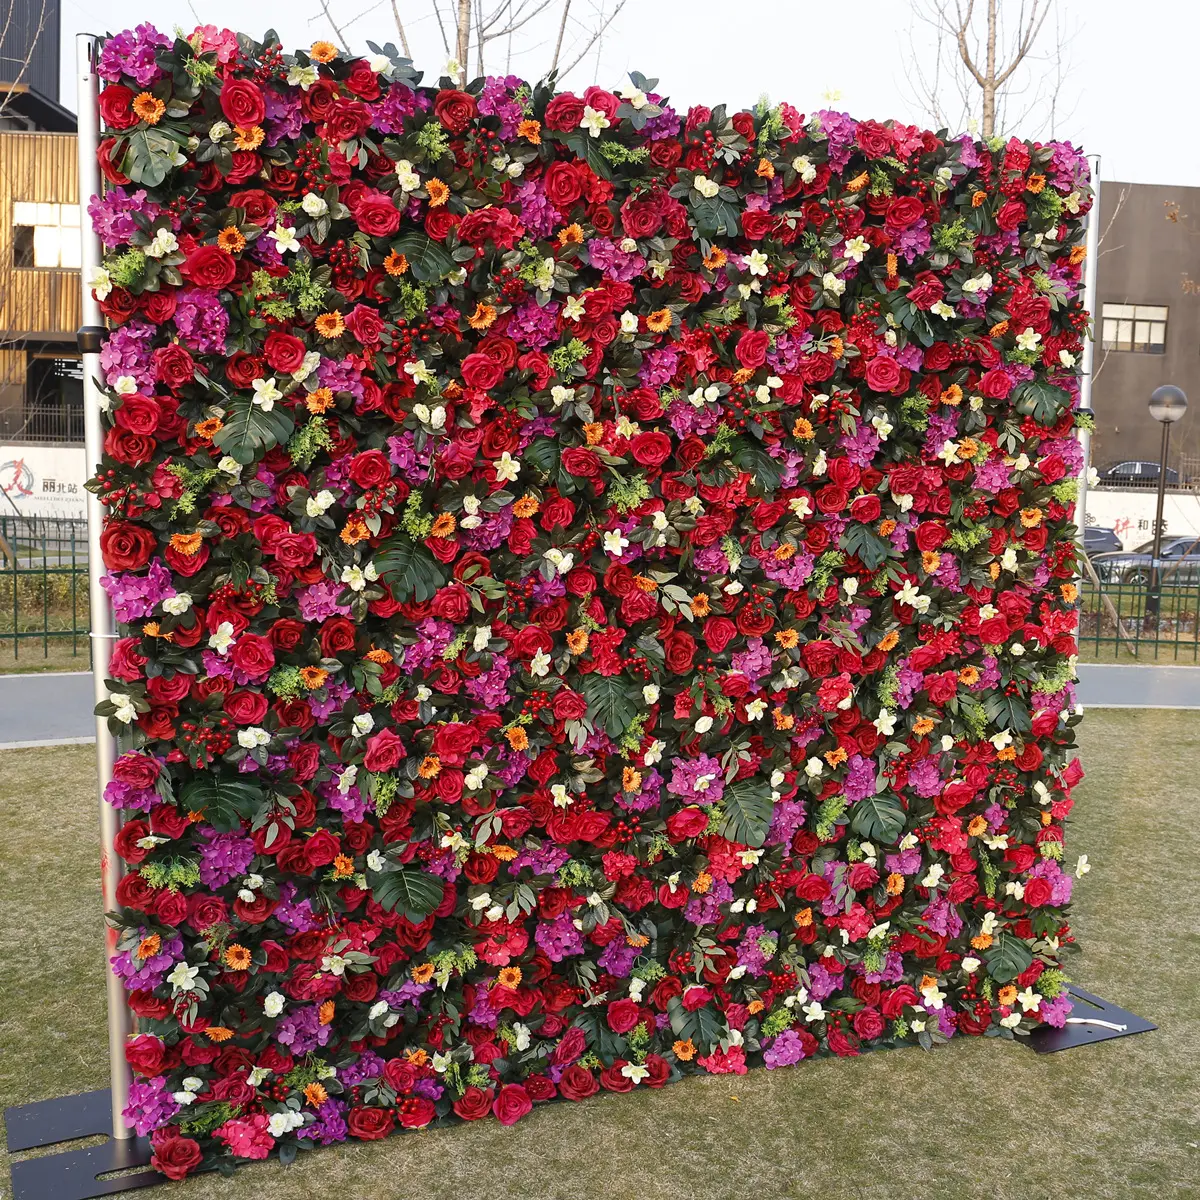 Individuelle rote künstliche Seidenrose Blume Wandhintergrund für Hochzeit Party Veranstaltungen Fotodekor verschiedene Größen verfügbar